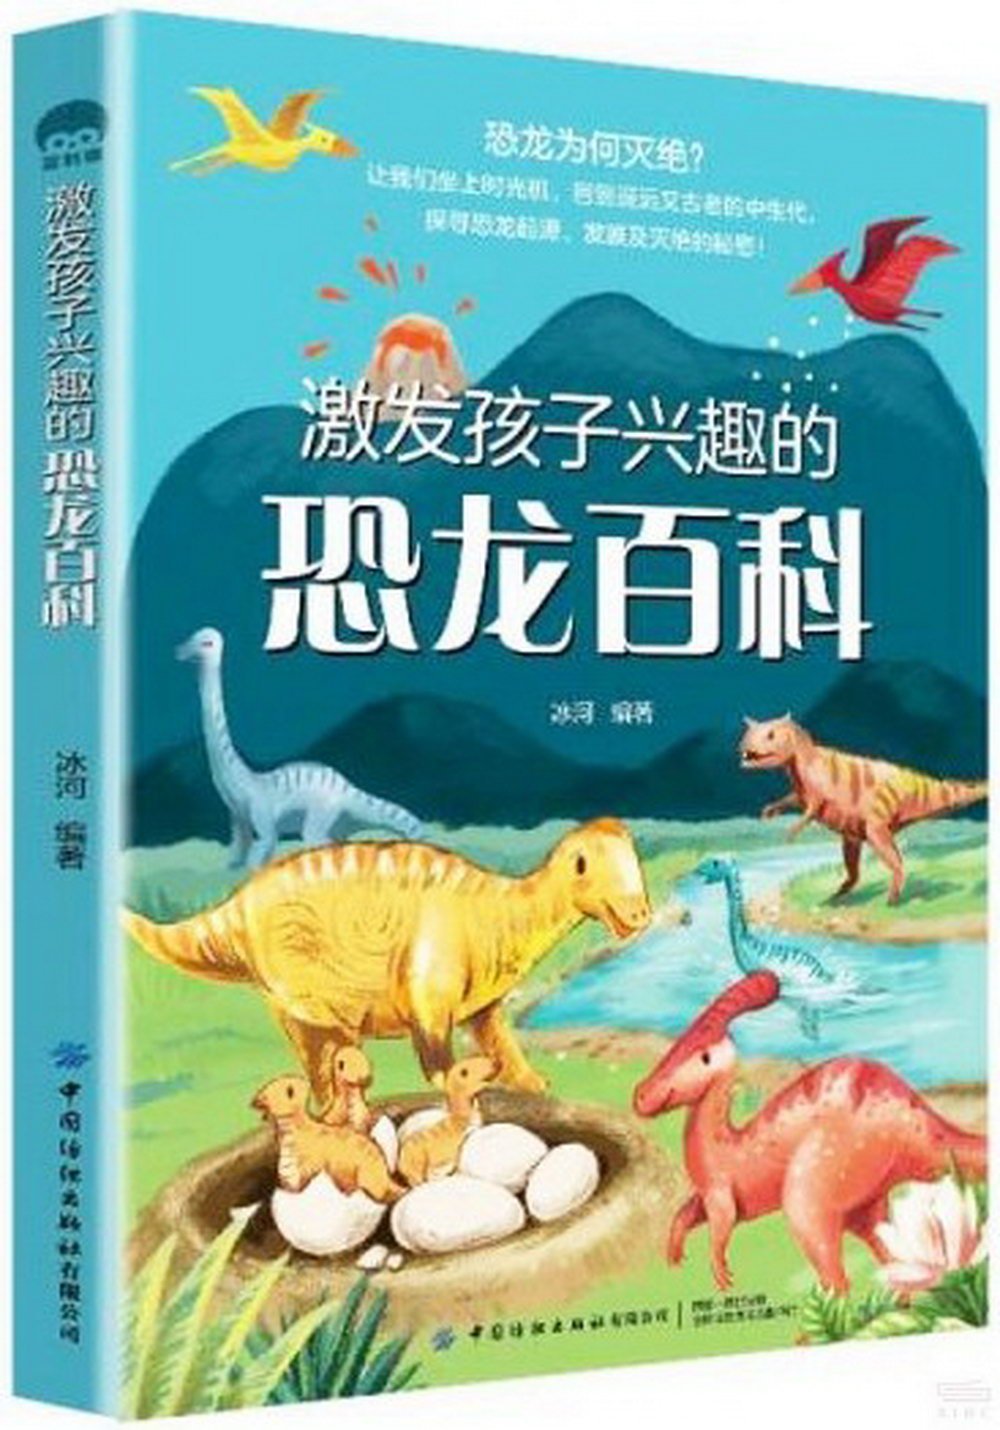 激發孩子興趣的恐龍百科